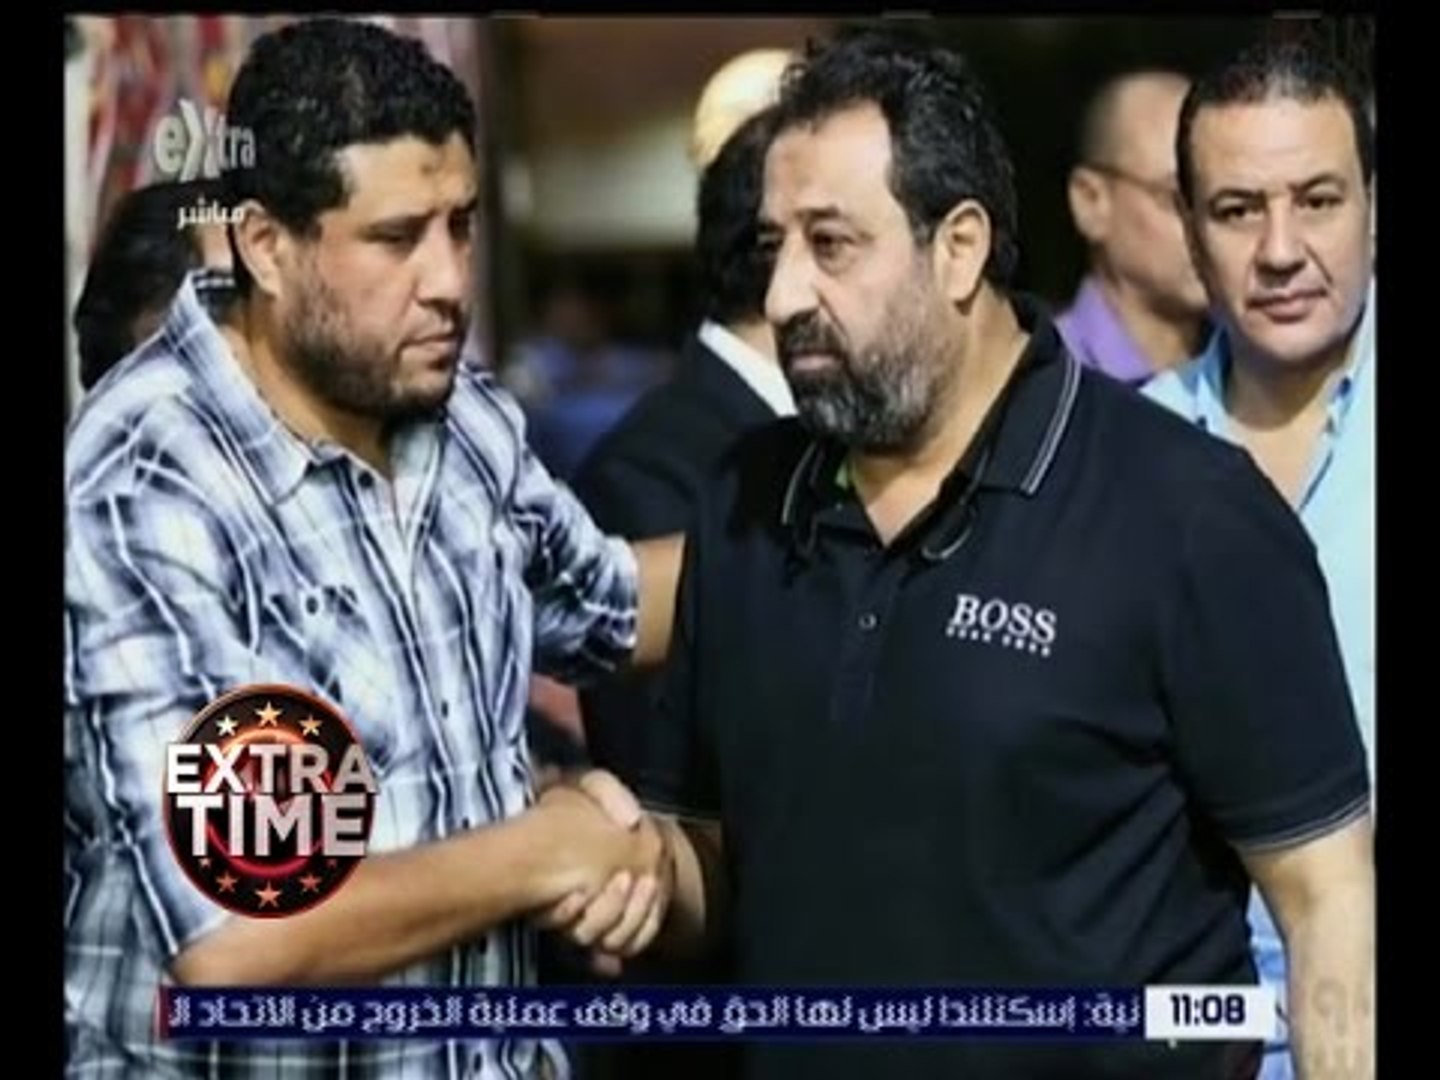 اكسترا تايم | كابتن أحمد ماهر .. في ذمة الله - video Dailymotion